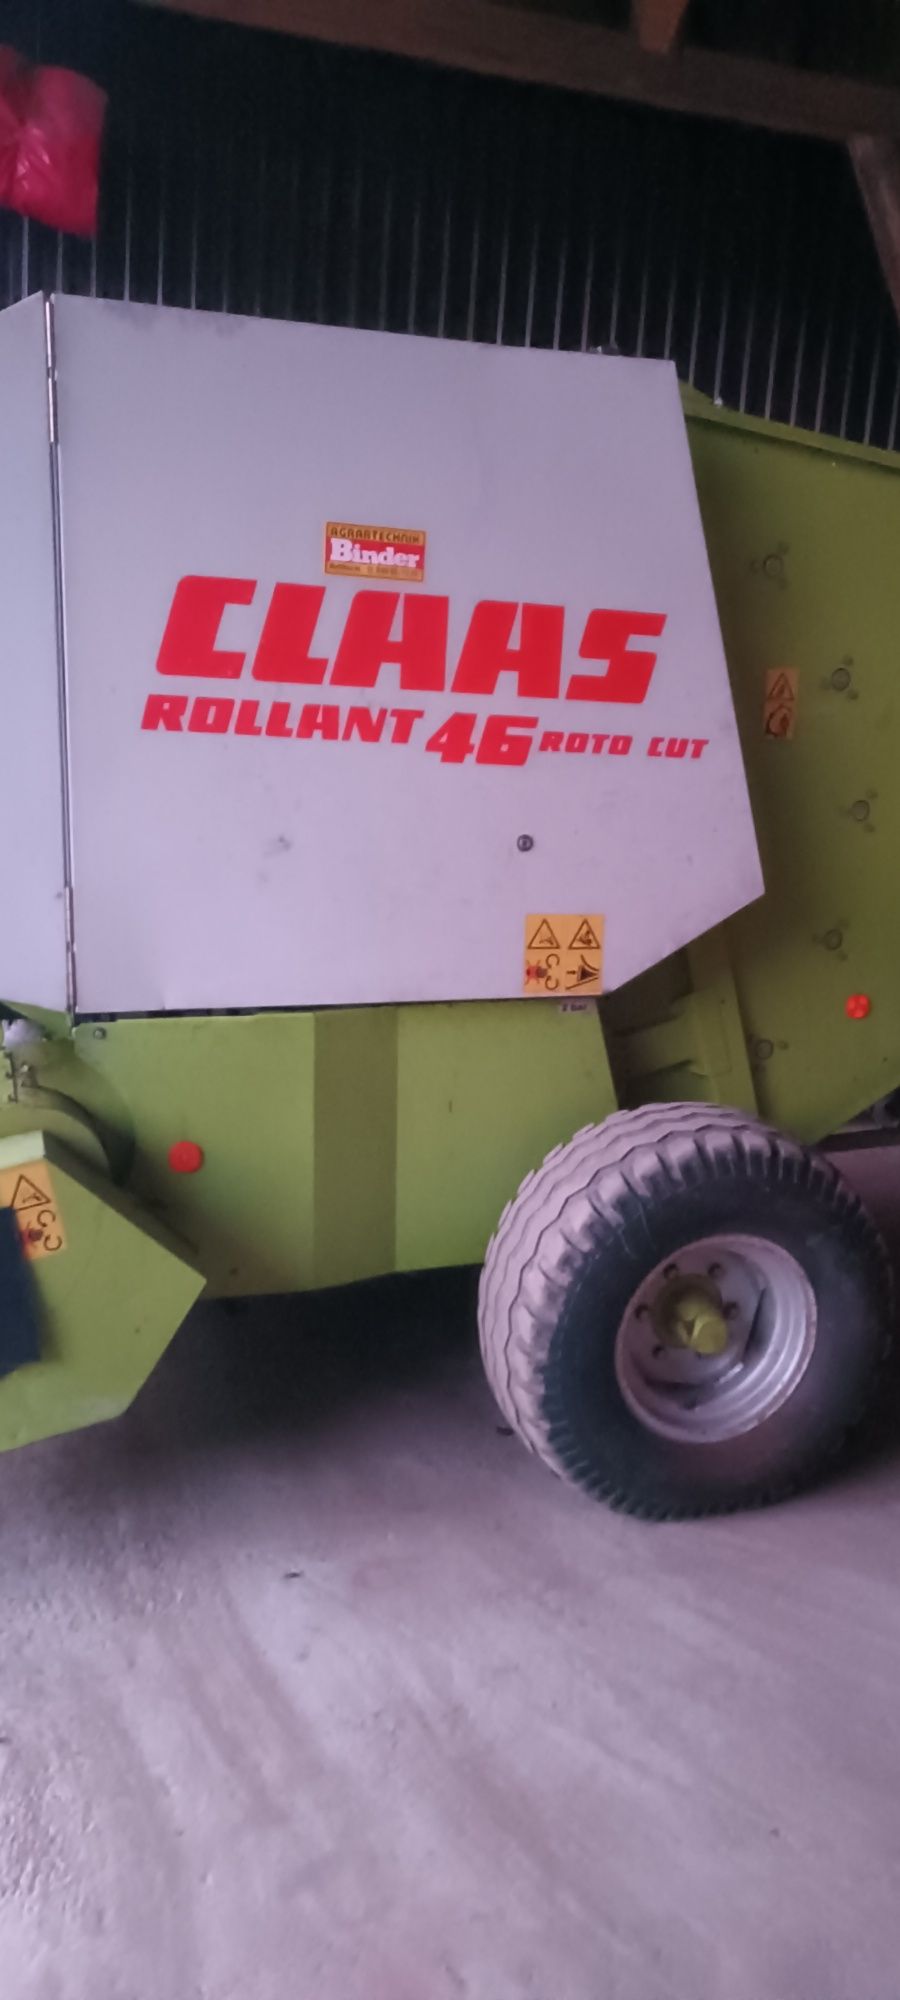 Presă rotundă Claas 46 Roto Cut